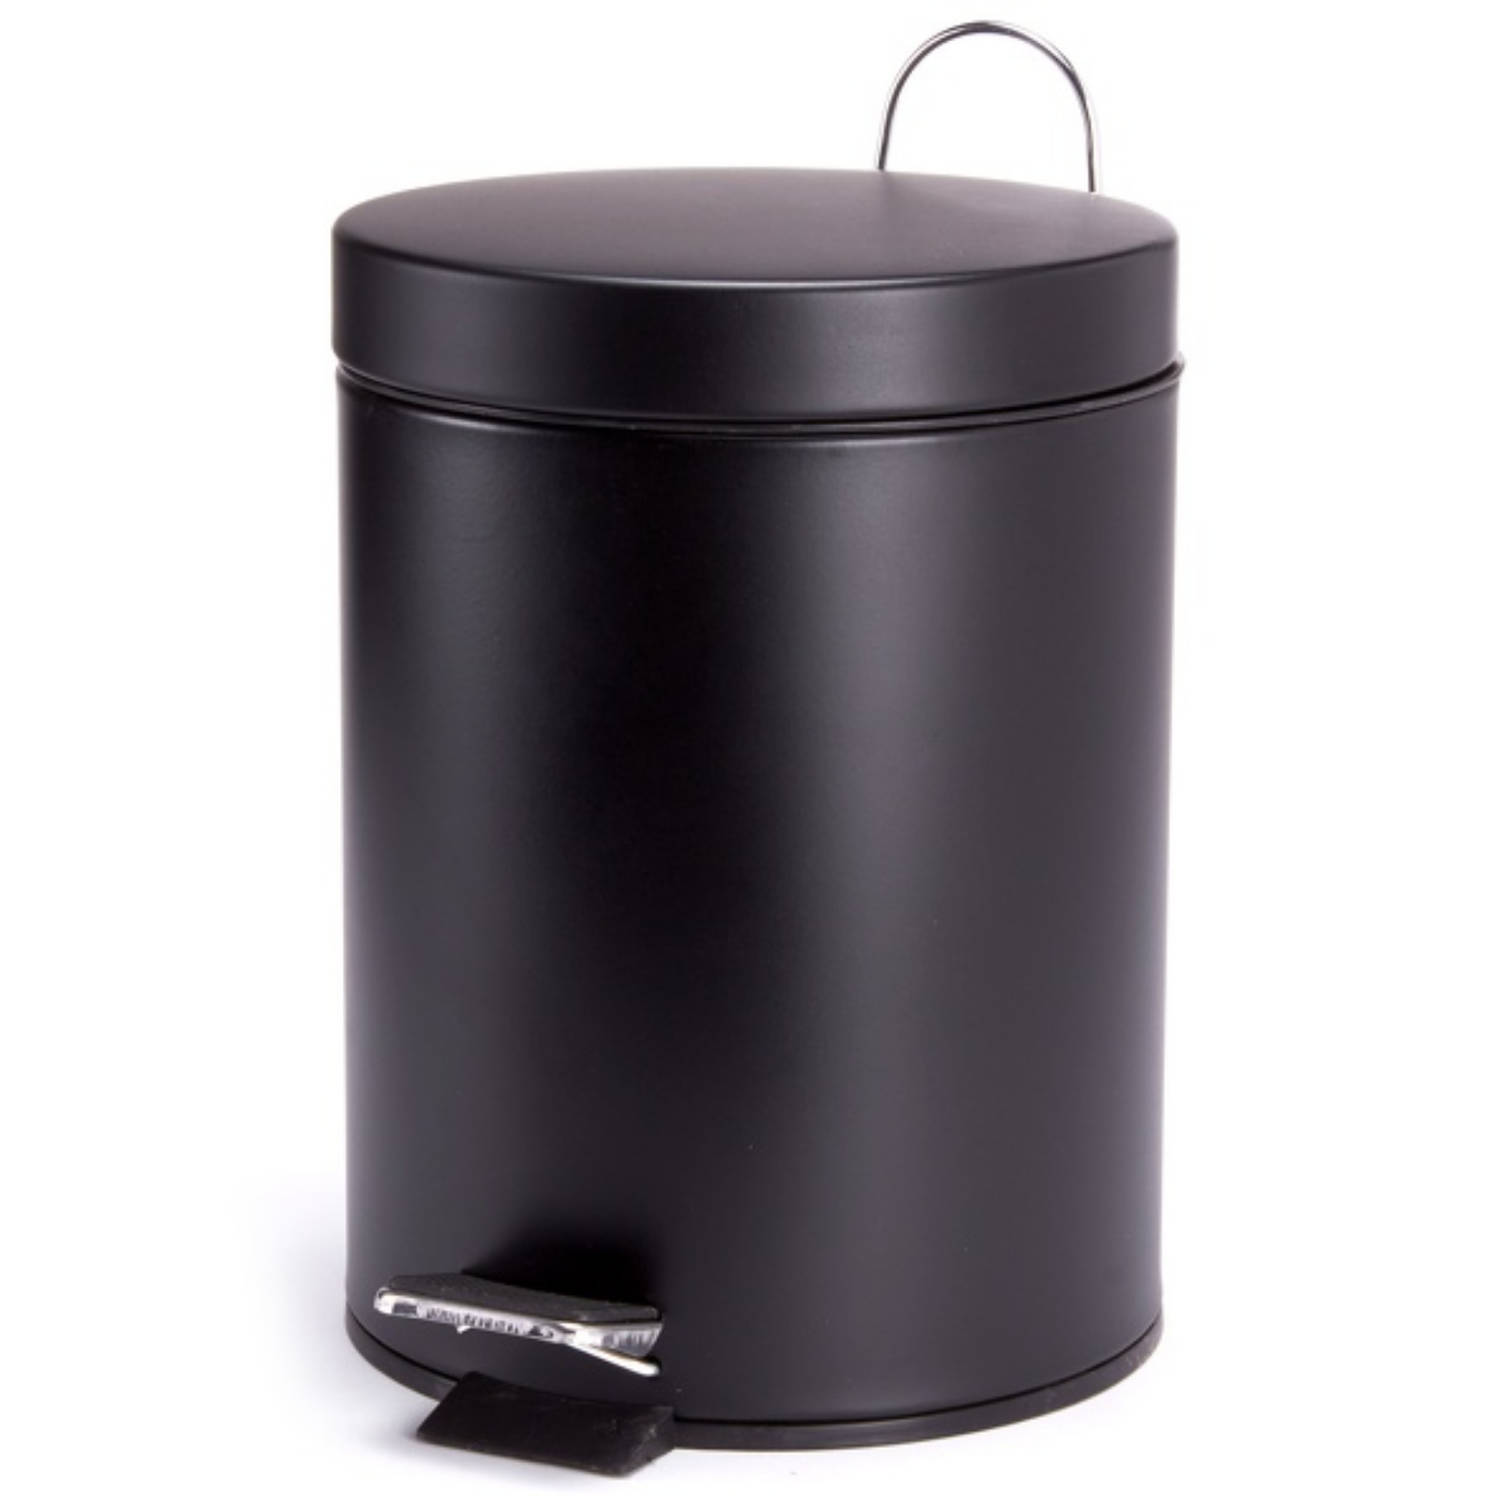 MSV Prullenbak/pedaalemmer - metaal - zwart - 3 liter - 17 x 25 cm - Badkamer/toilet